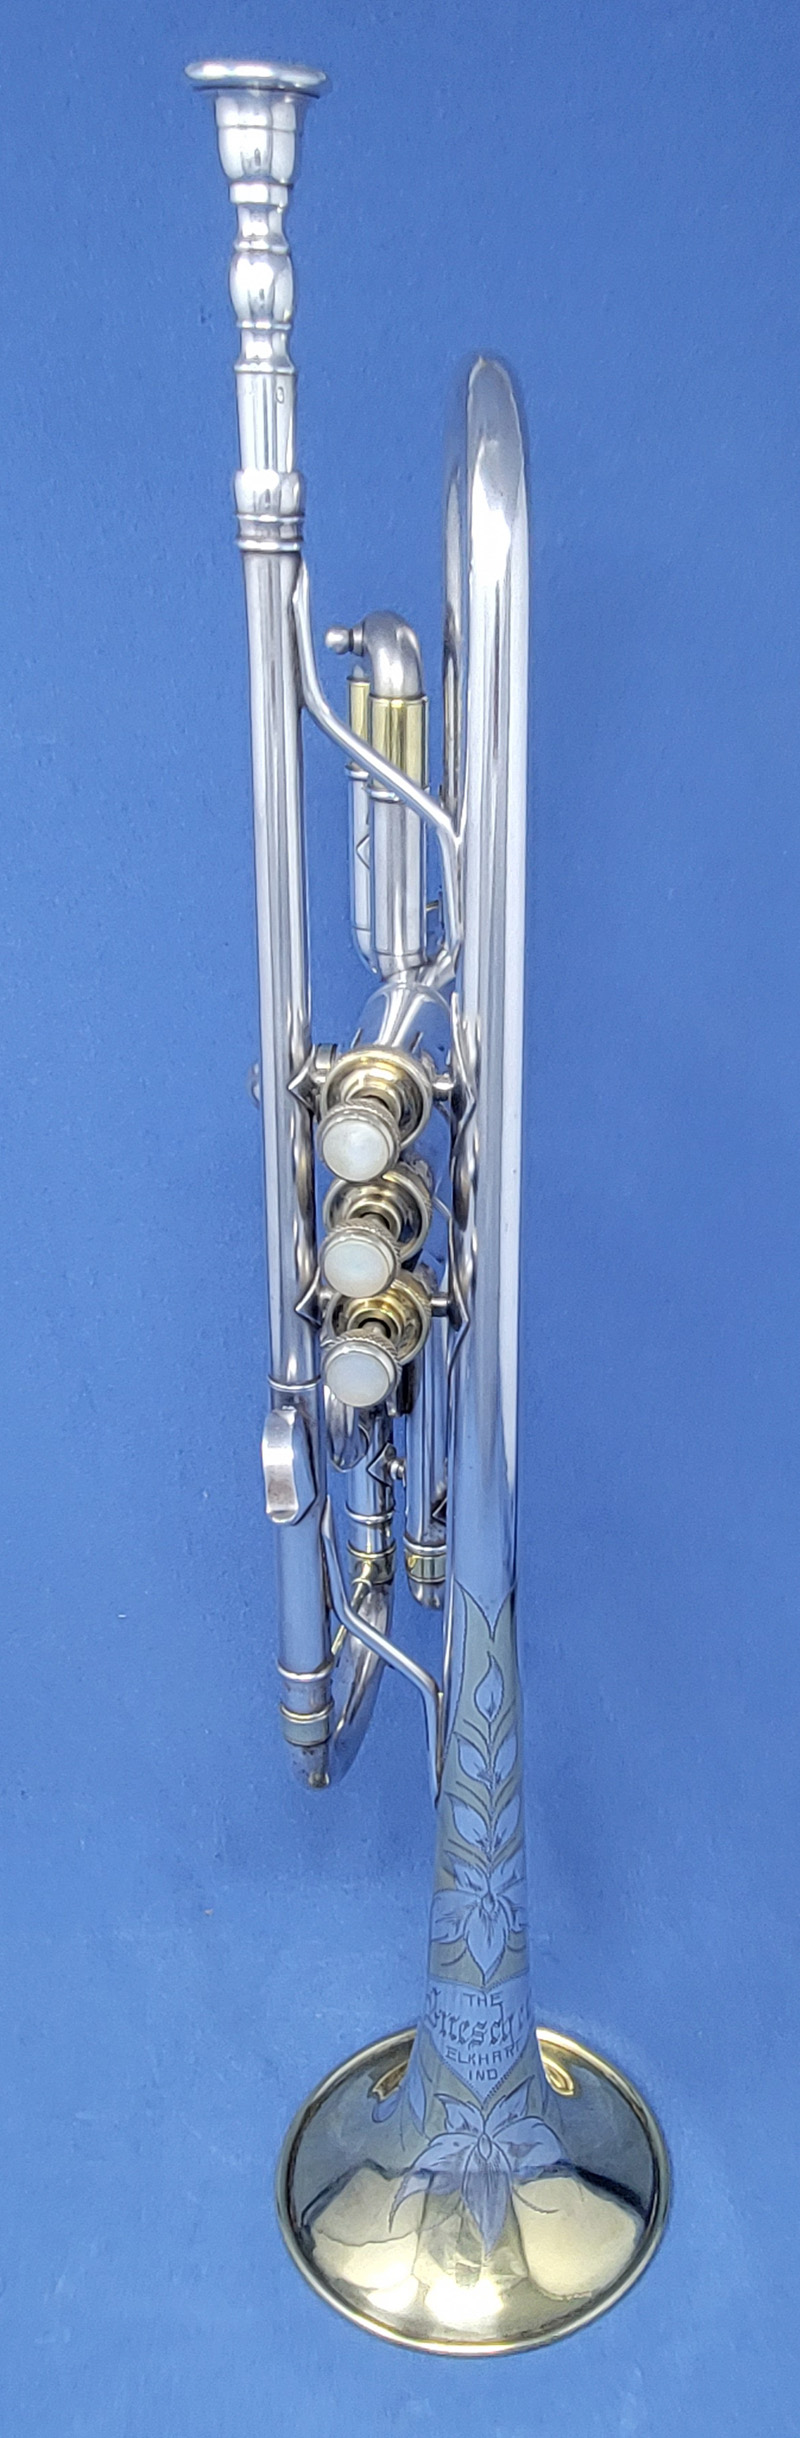 Buescher trumpet Parlor Grand